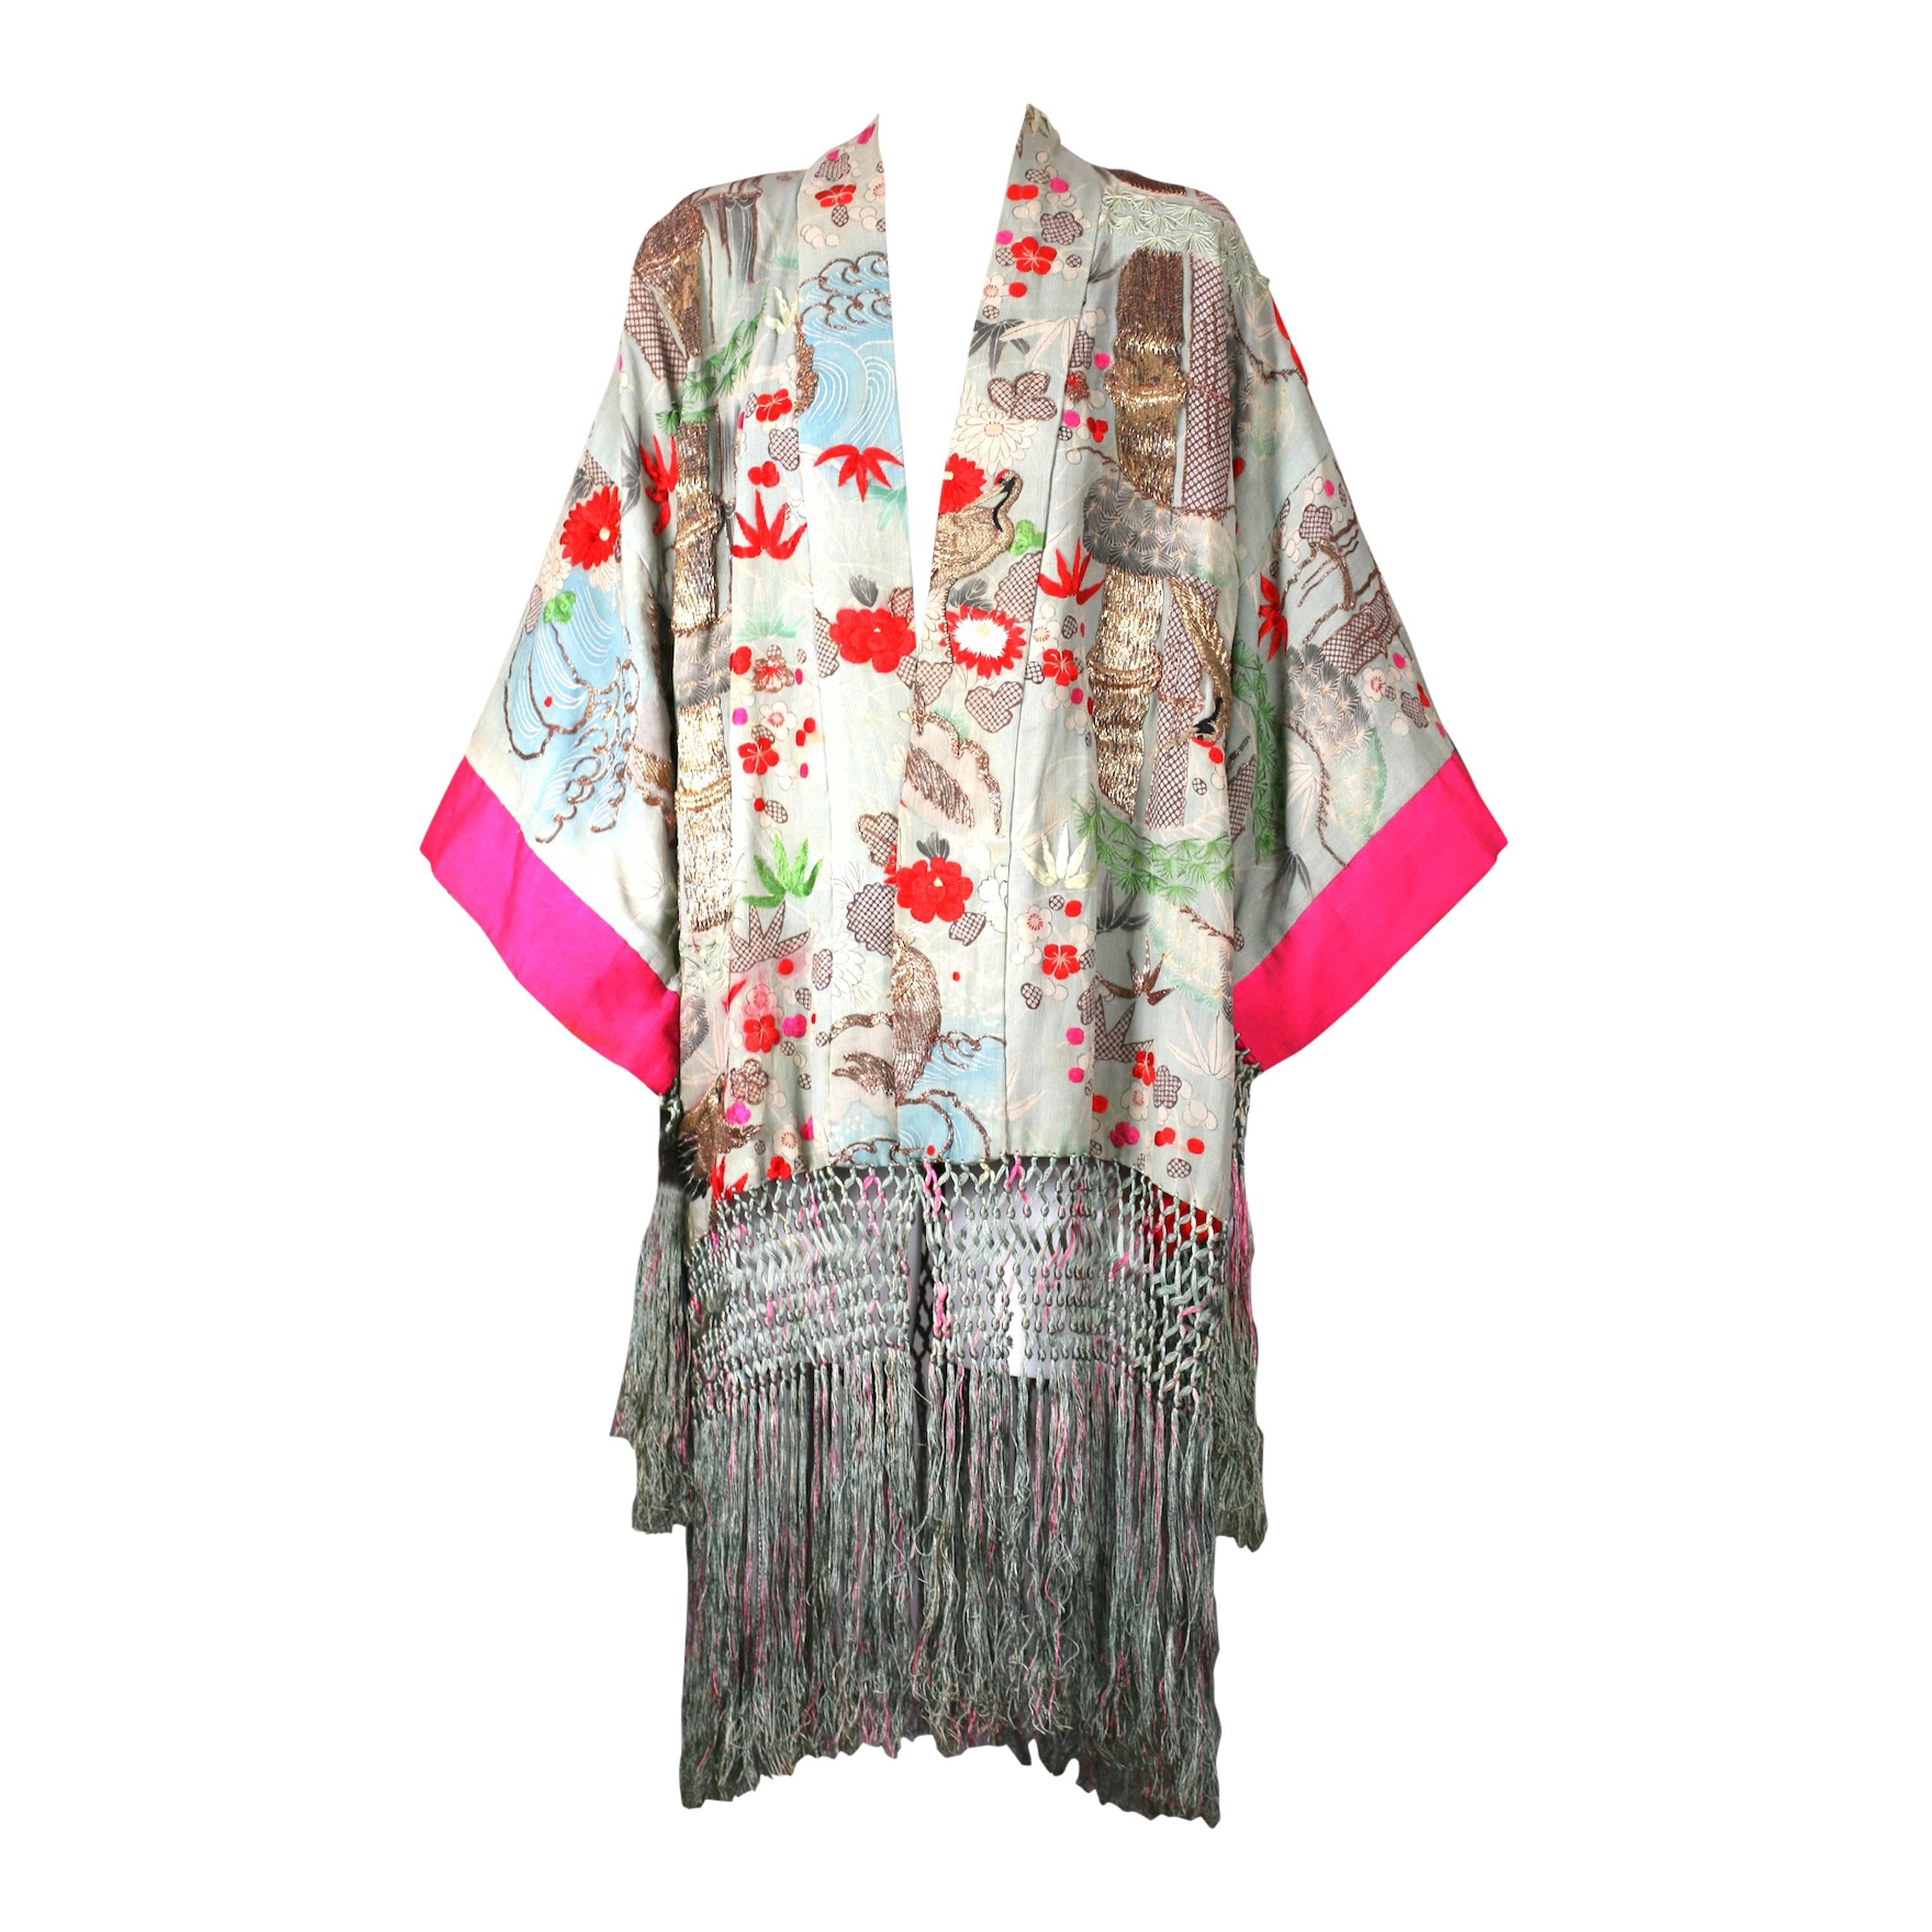 Elaborately Embroidered and Fringed Kimono